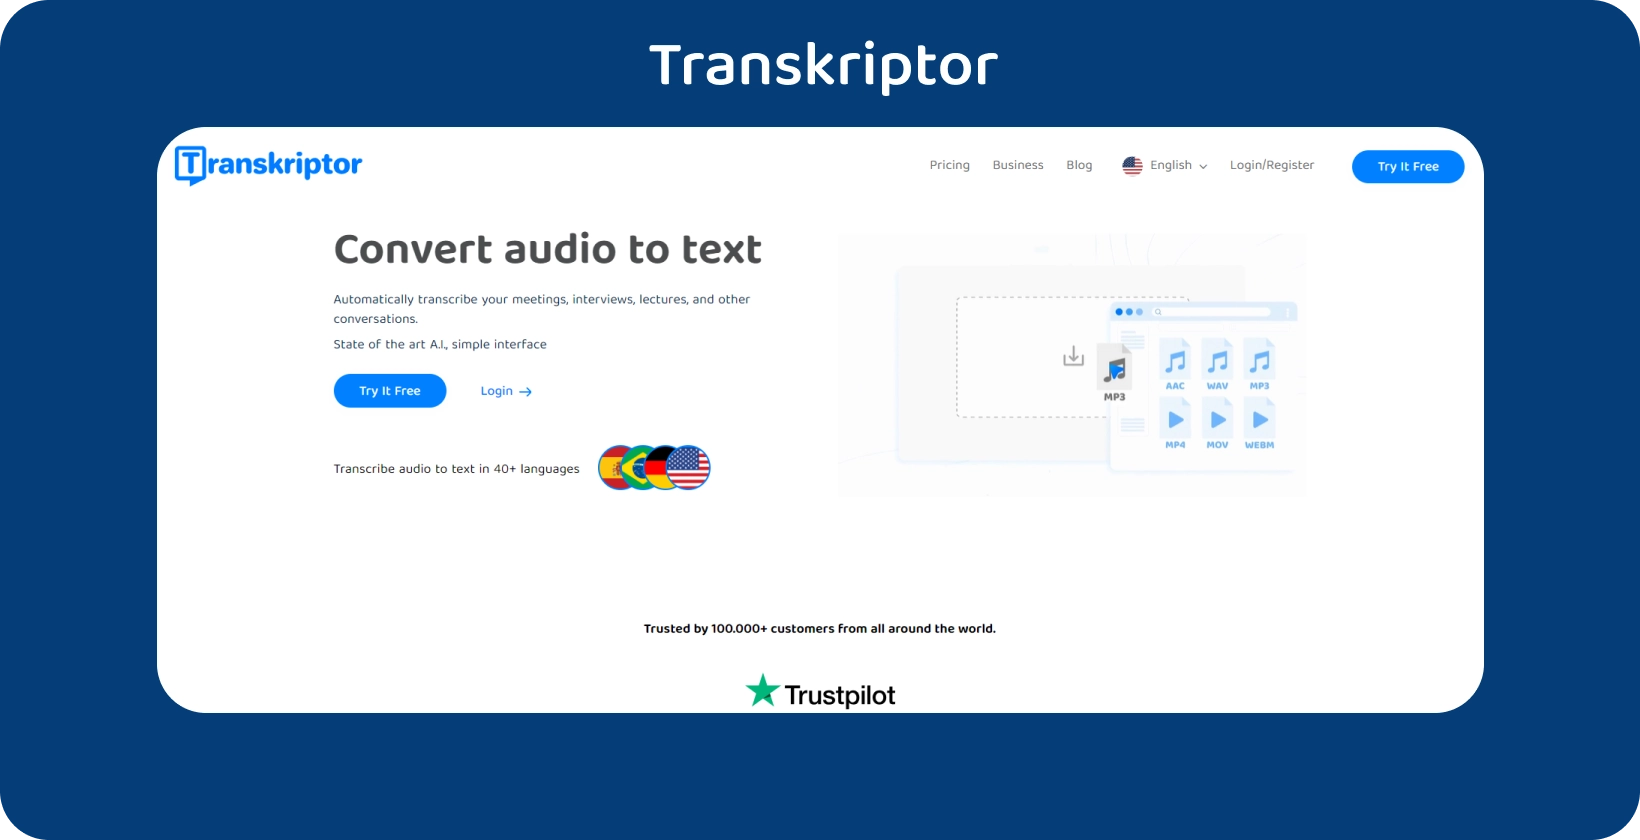 Página de inicio de Transkriptor con una clara llamada a la acción, que ofrece servicios de transcripción de audio a texto.